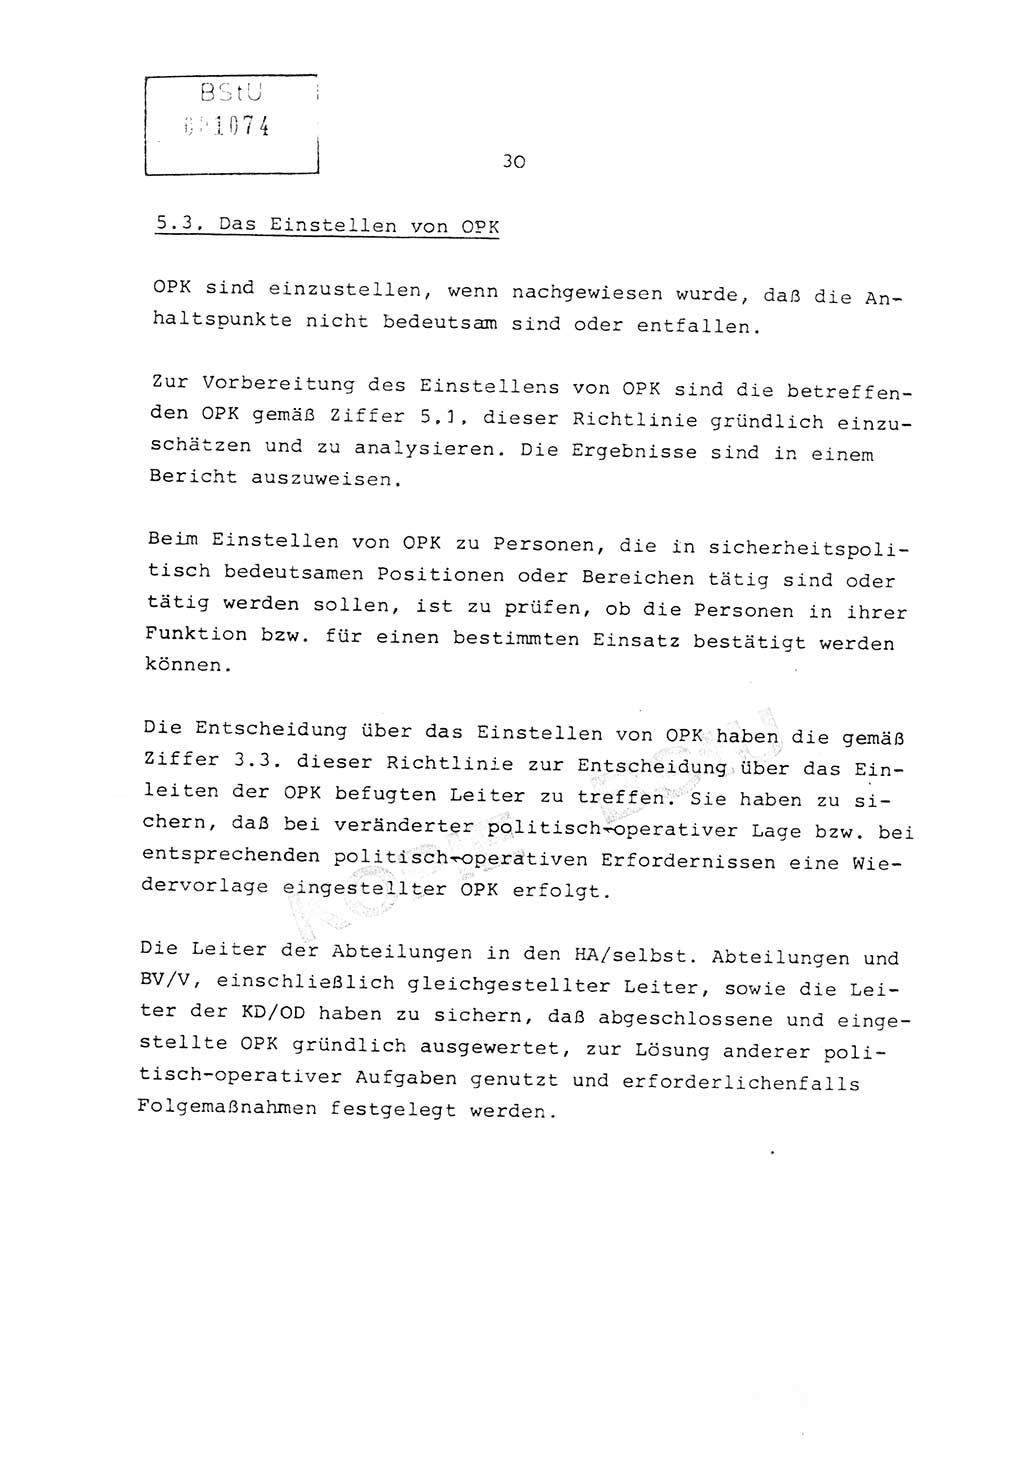 Richtlinie Nr. 1/81 über die operative Personenkontrolle (OPK), Ministerium für Staatssicherheit (MfS) [Deutsche Demokratische Republik (DDR)], Der Minister, Geheime Verschlußsache (GVS) ooo8-10/81, Berlin 1981, Blatt 30 (RL 1/81 OPK DDR MfS Min. GVS ooo8-10/81 1981, Bl. 30)